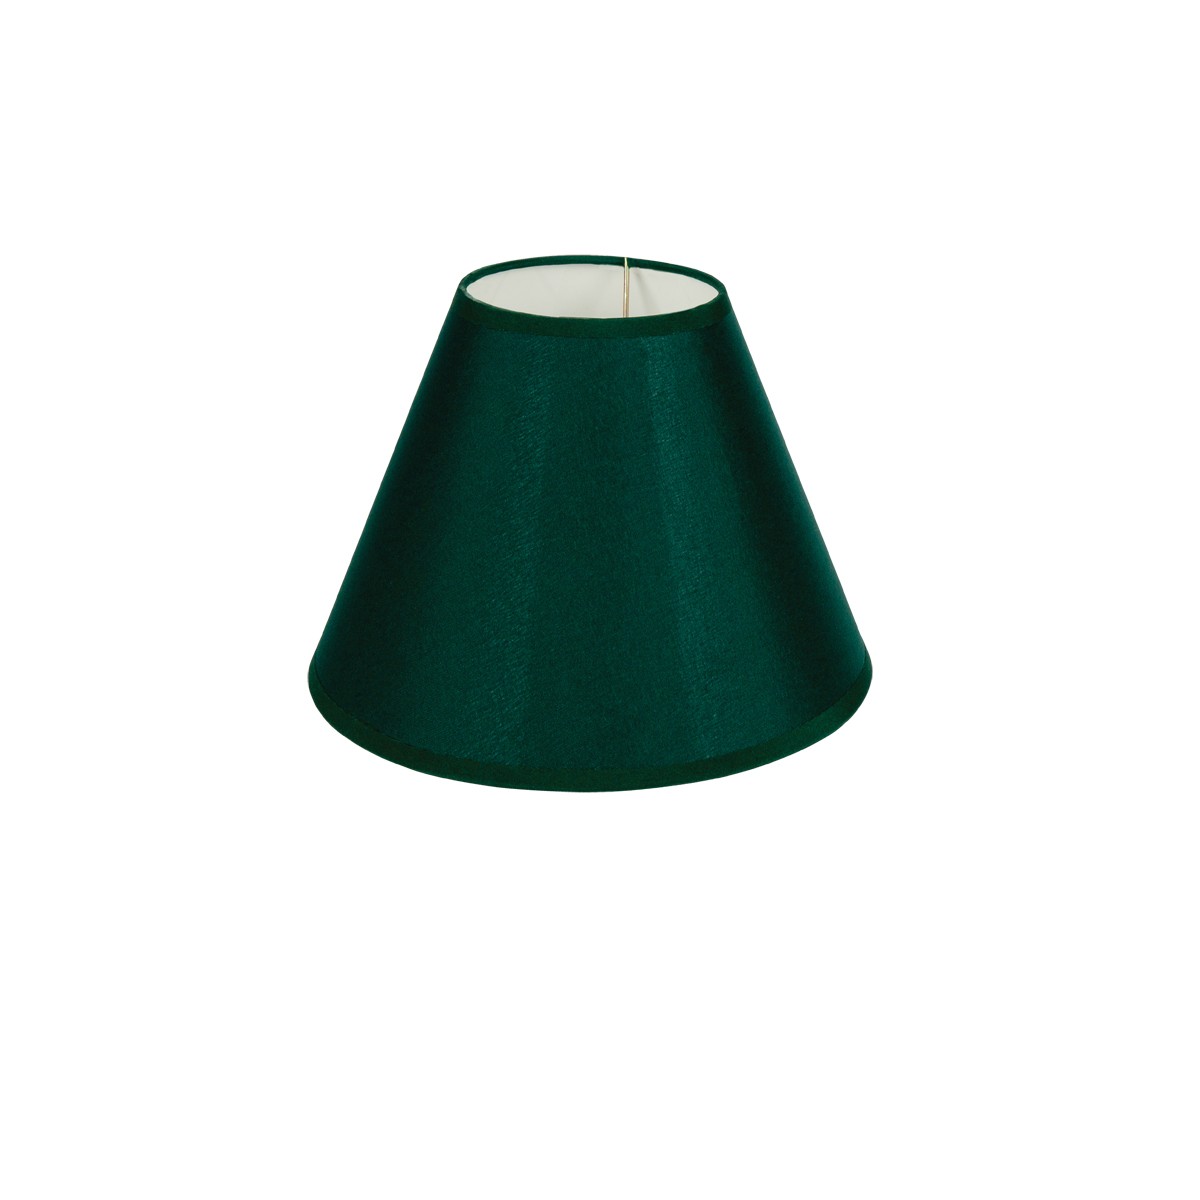 Καπέλο Μονόχρωμο Στρογγυλό Φ18cm Κάτω Πλευρά -Σε Πράσινο Χρώμα        VK/E27/E14/D18/GR